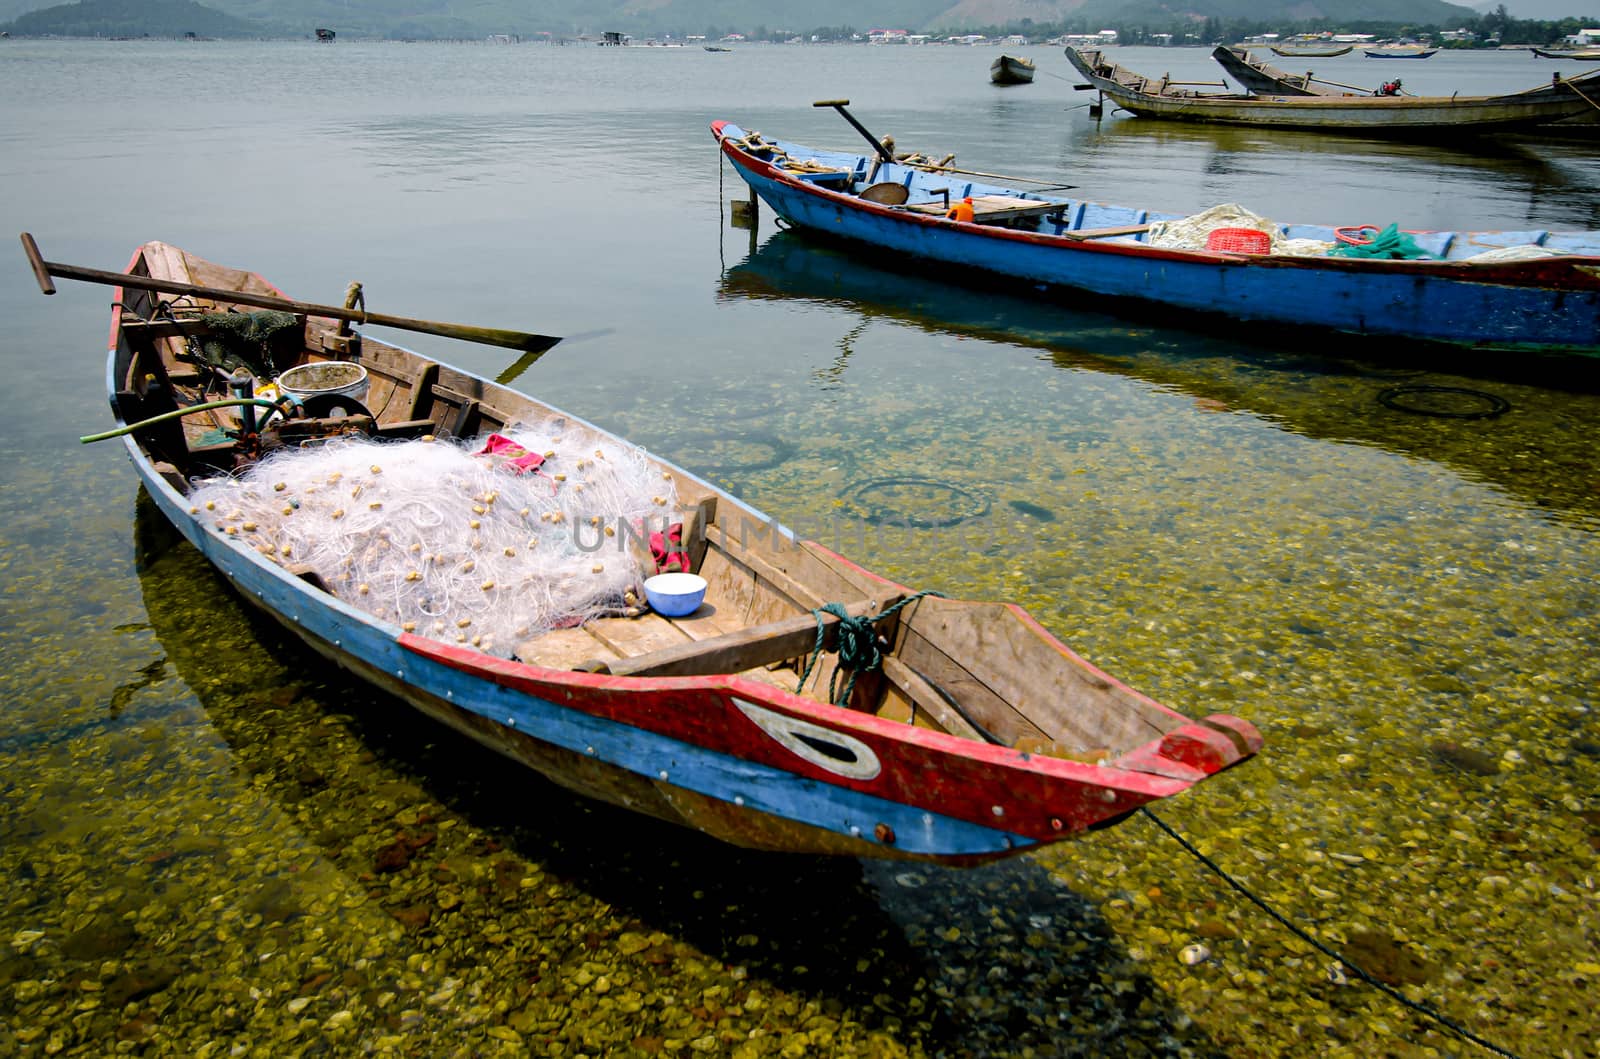 Vietnamese fishing boat in mooring by Sonnet15